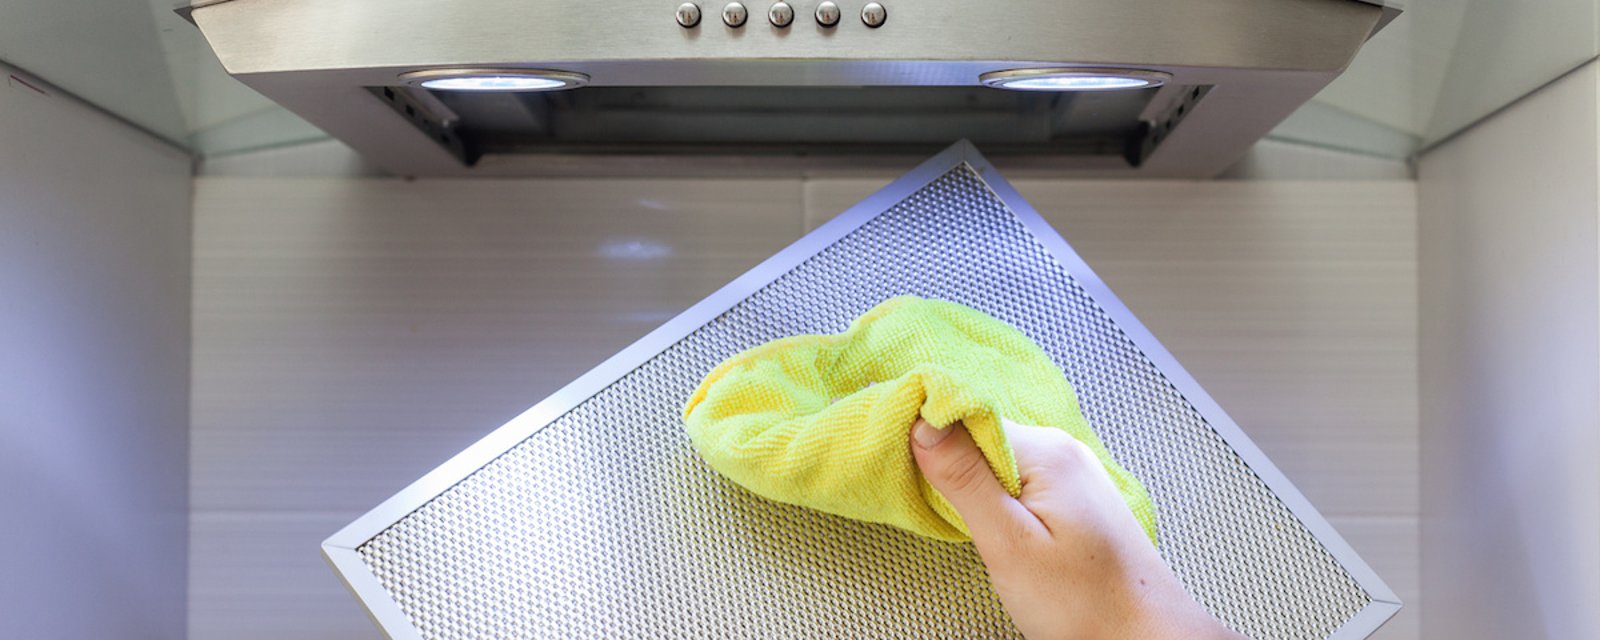 Suivez ces 3 étapes faciles pour nettoyer en profondeur votre hotte de cuisinière graisseuse 